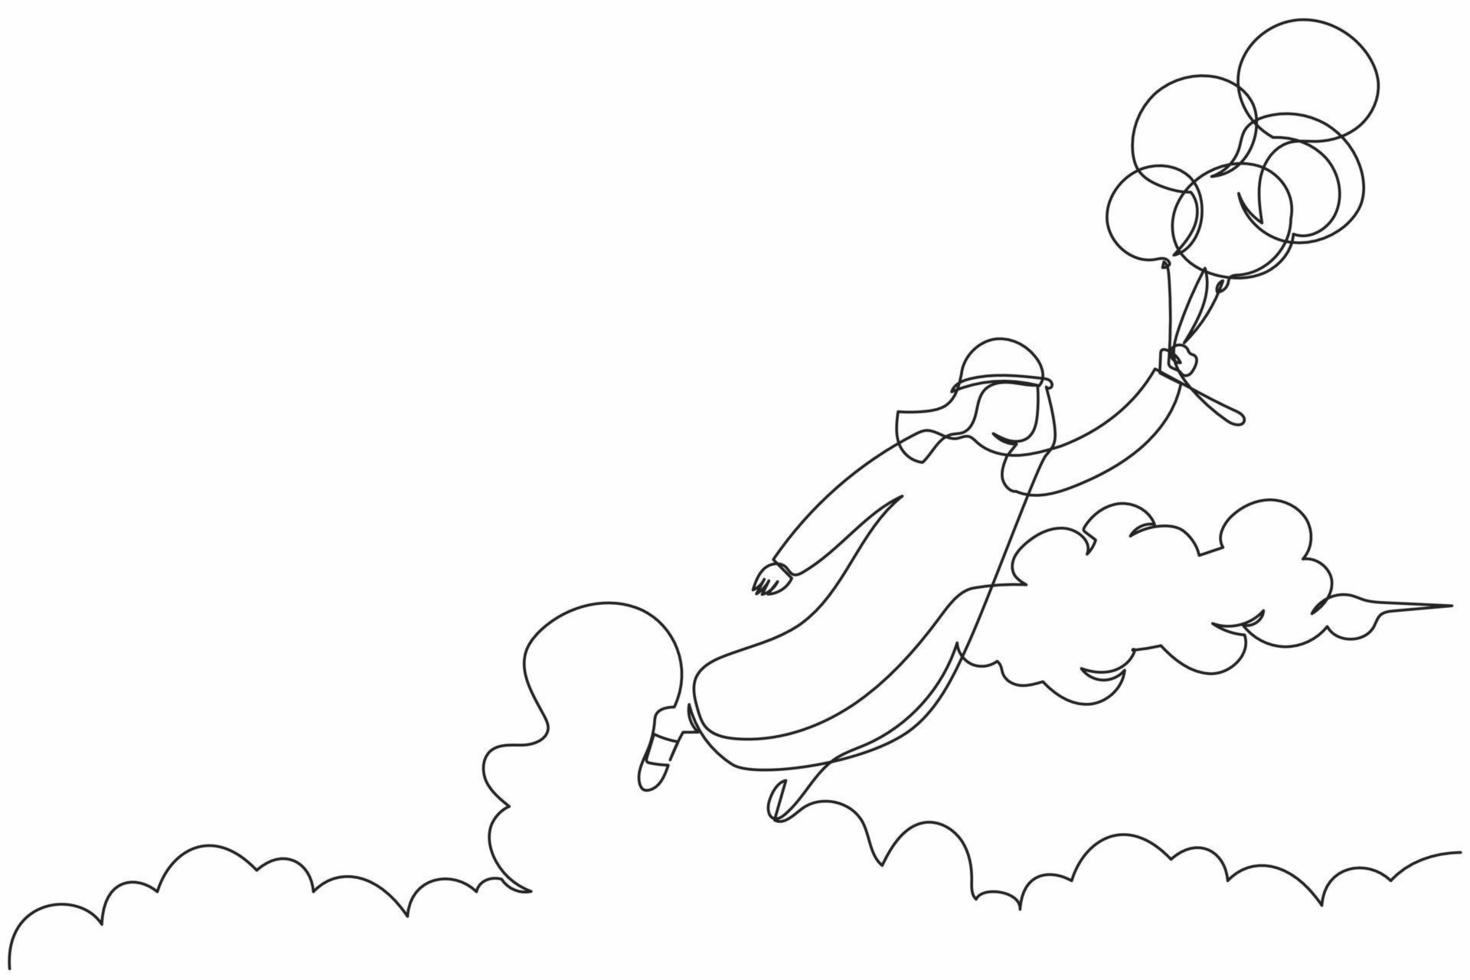 contínuo um sucesso de desenho de linha empresário árabe voando com balão. trabalhador de escritório feliz alcançar a independência financeira. metáfora de negócios. ilustração gráfica de vetor de desenho de linha única